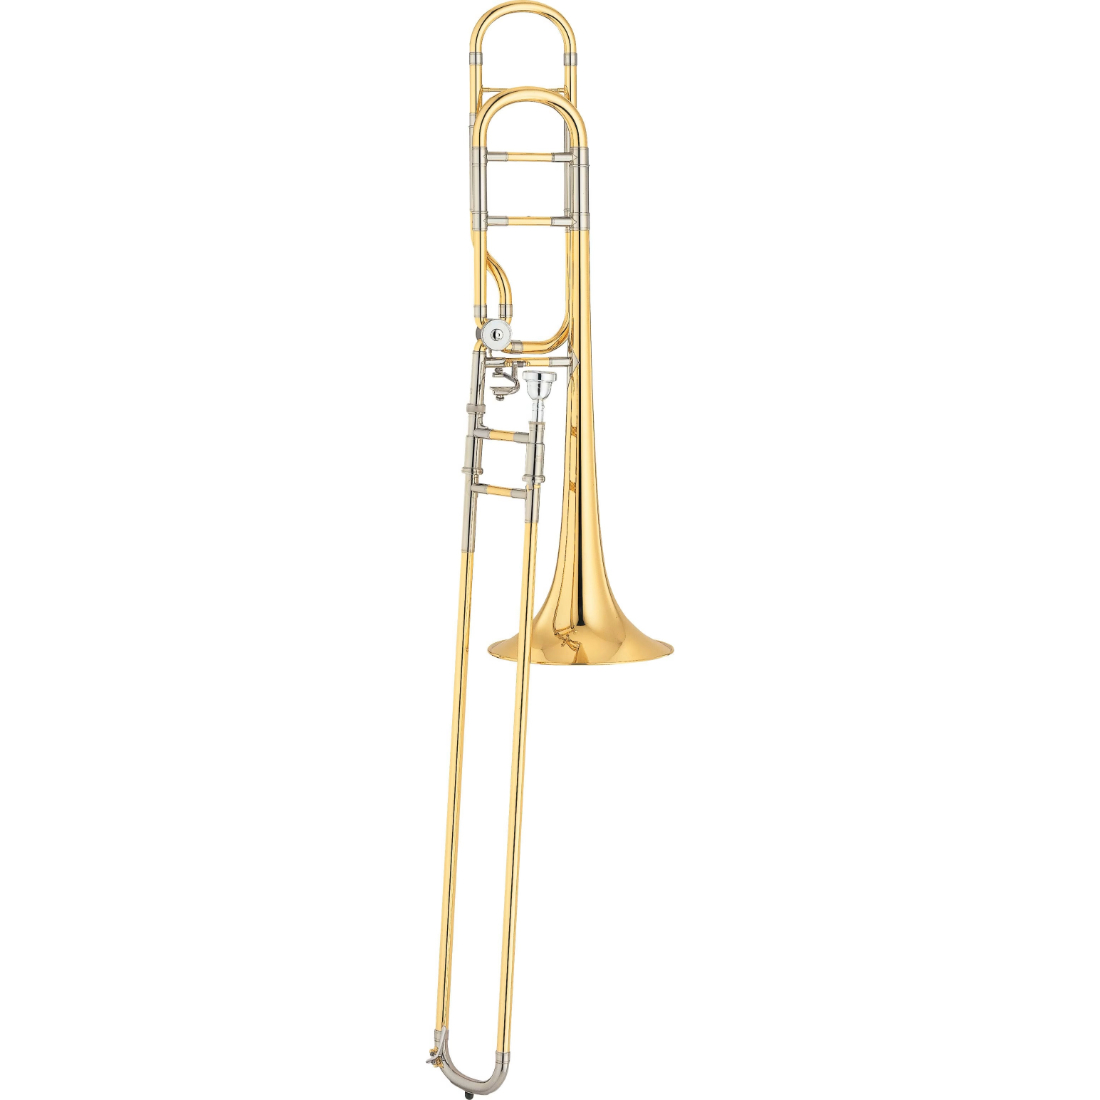 Brass Yamaha professional xeno series trombone